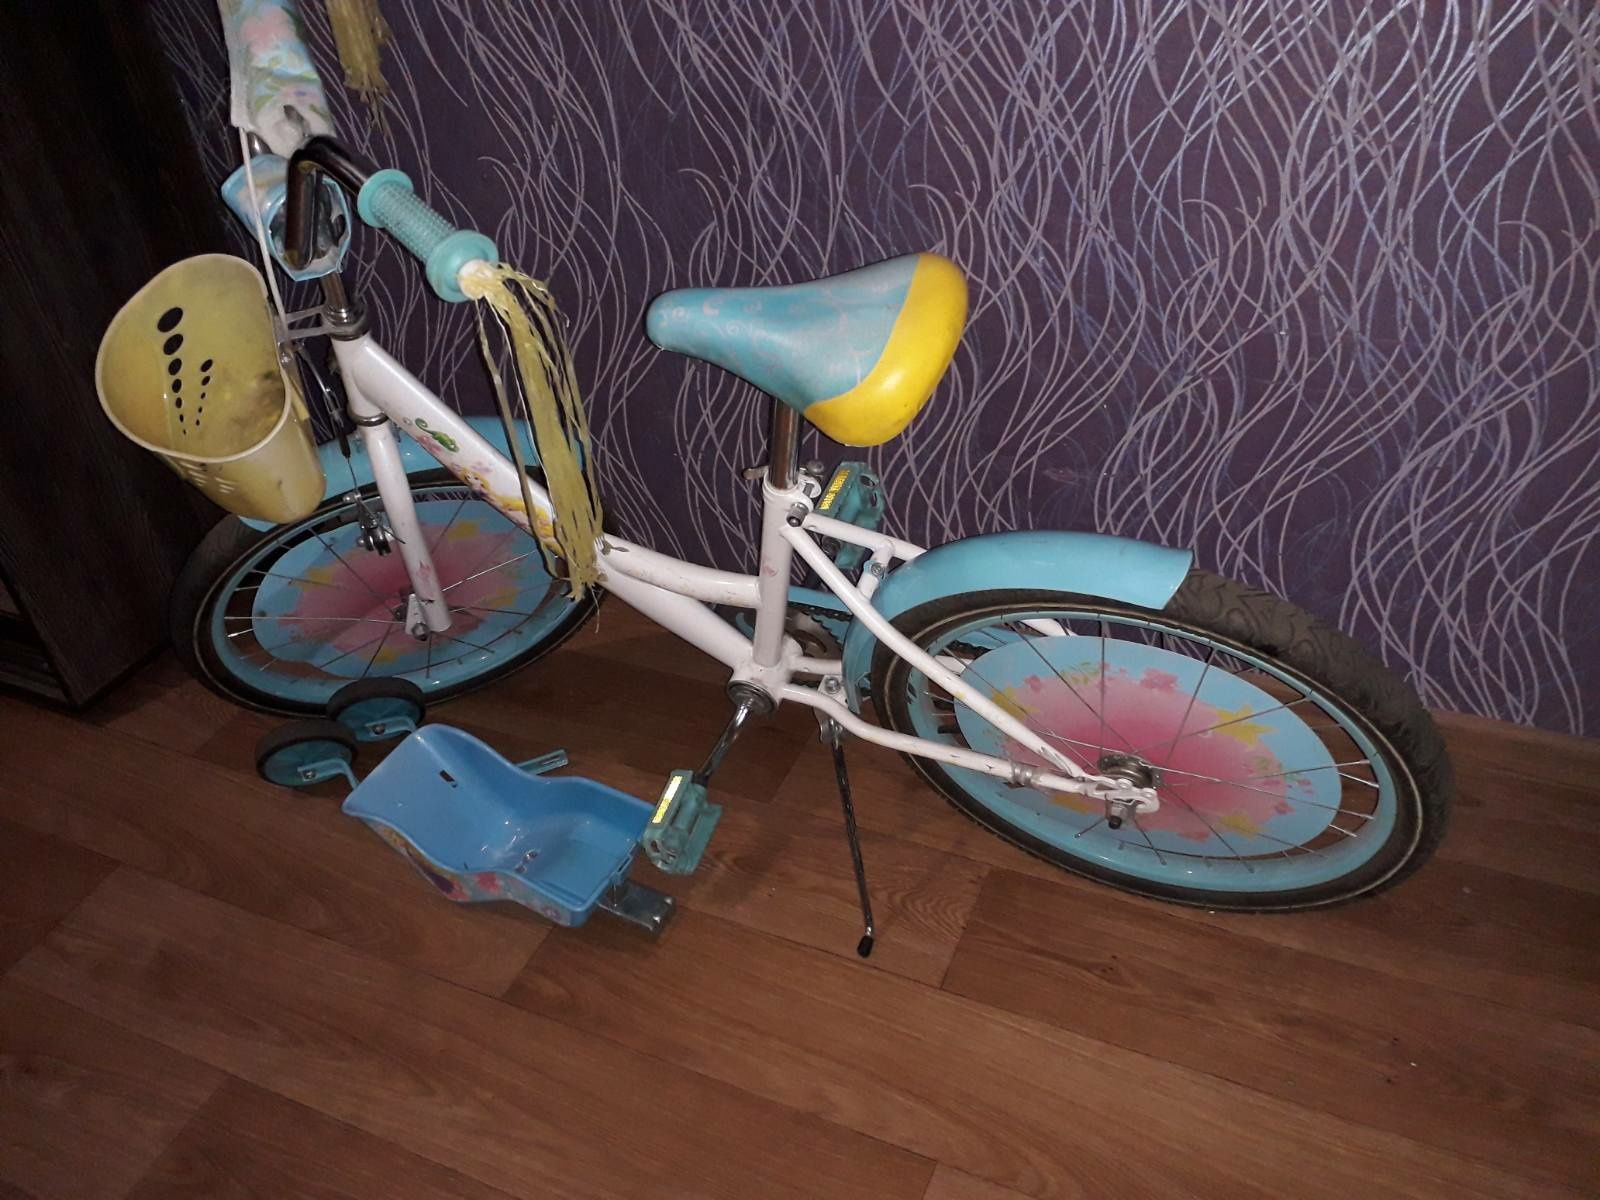 Продам велосипед для девочки, колёса 20 дюймов.